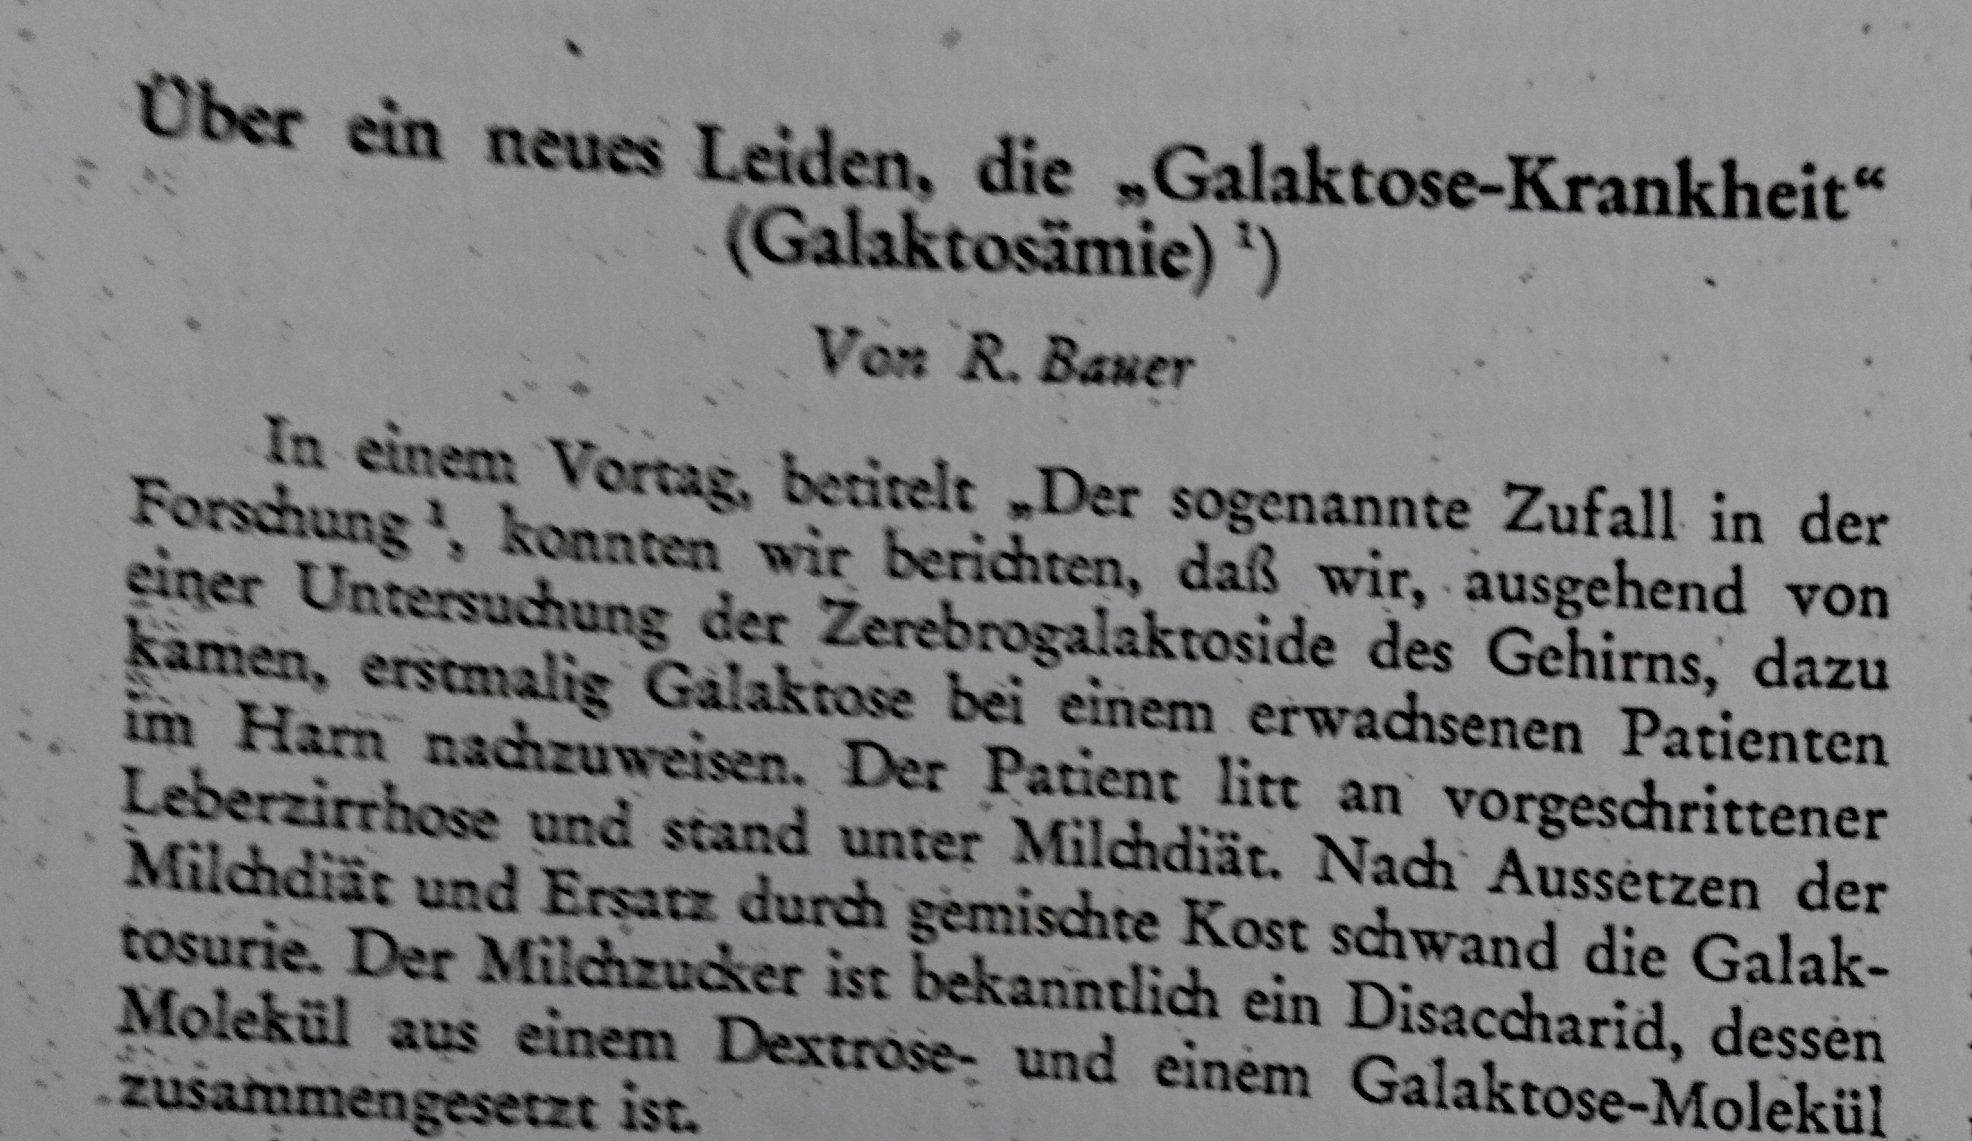 Wiener Med. Wochenschr 1959 (Nach Bauers Vortrag in der Wiener Gesellschaft der Ärzte im November 1958), Archiv H Je